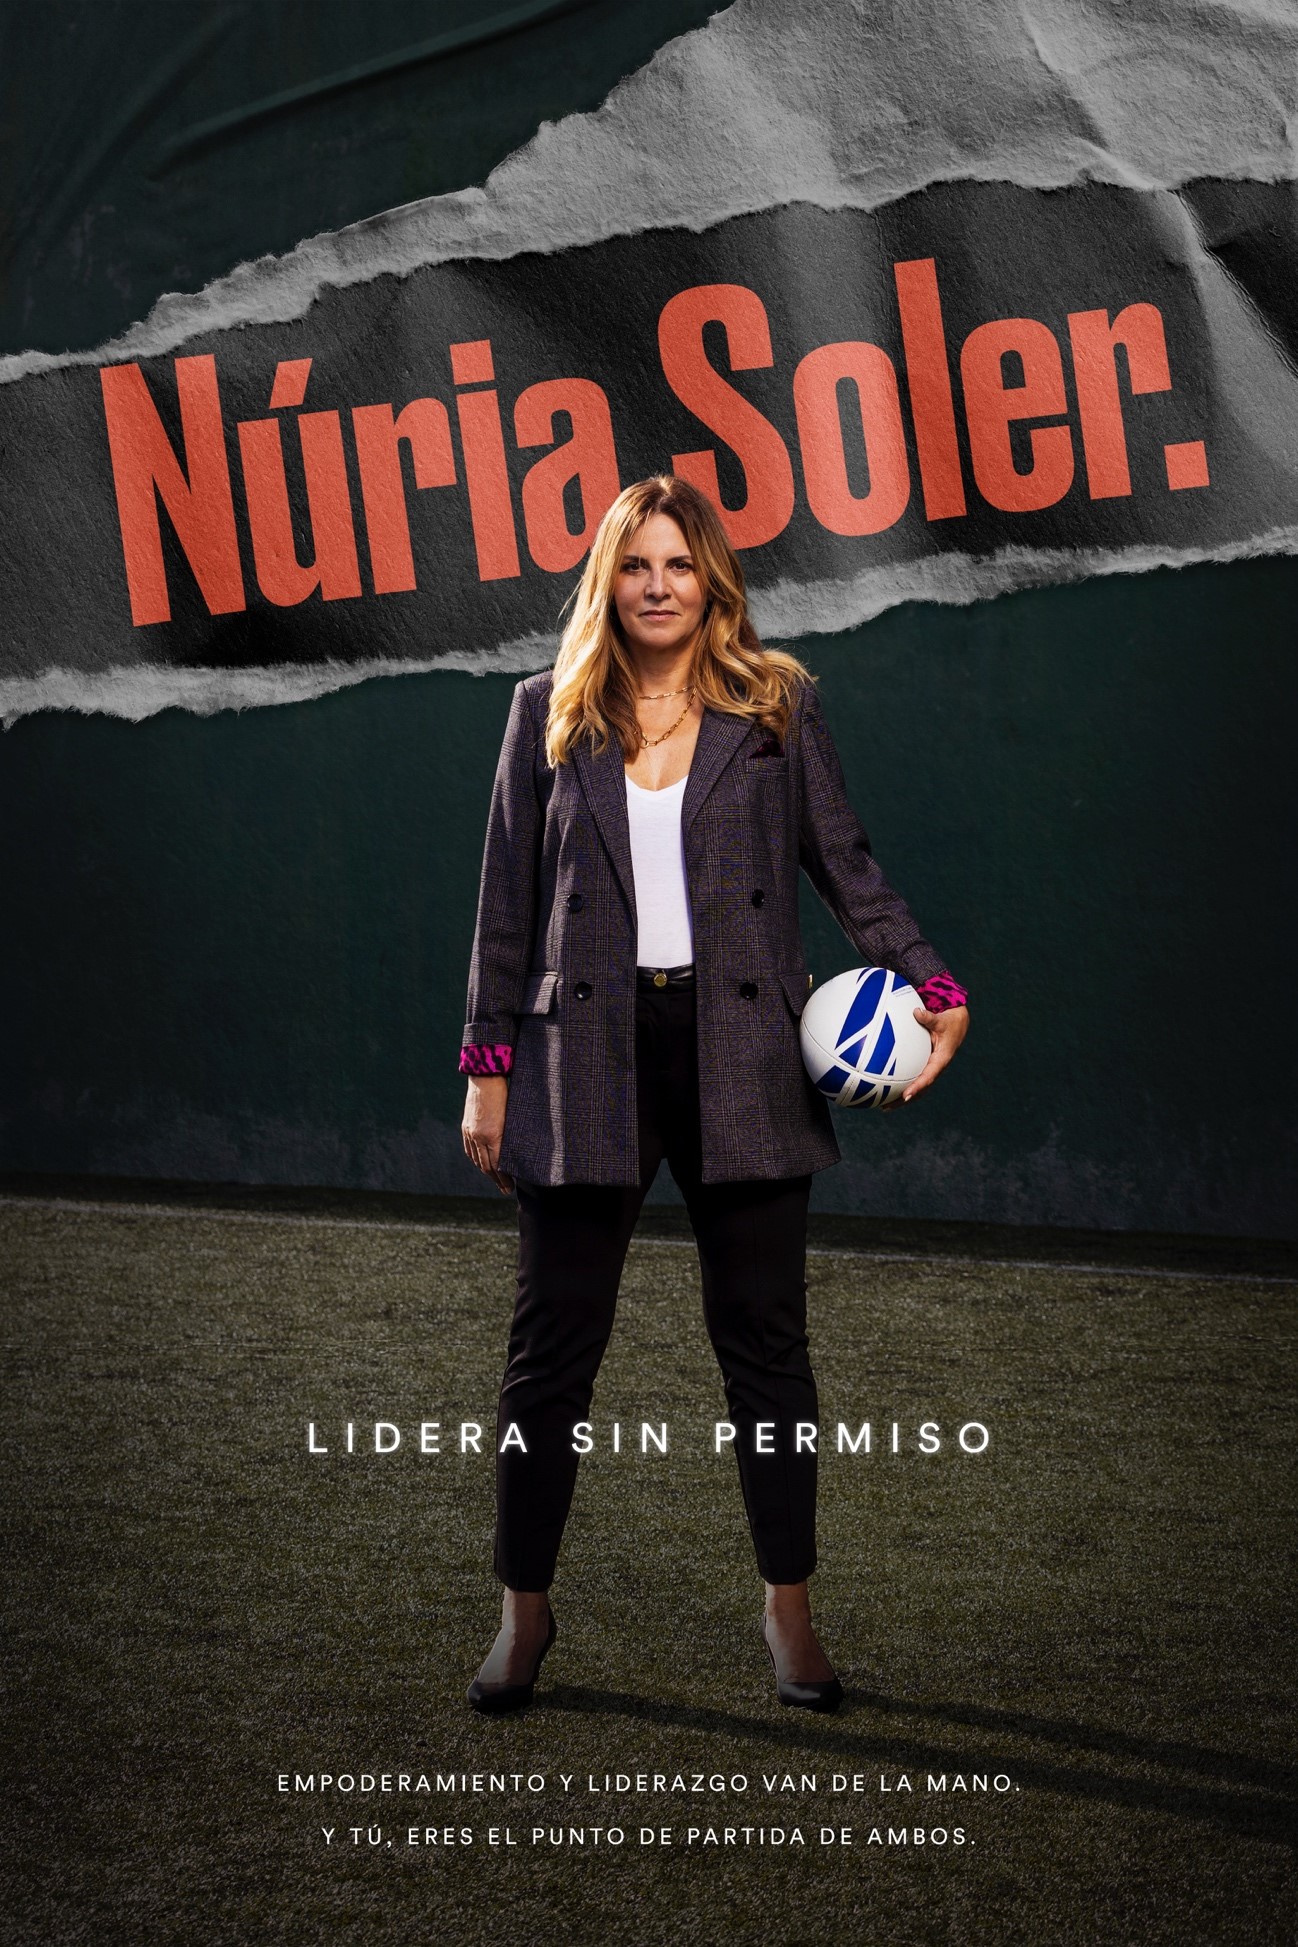 Contratar a Nuria Soler